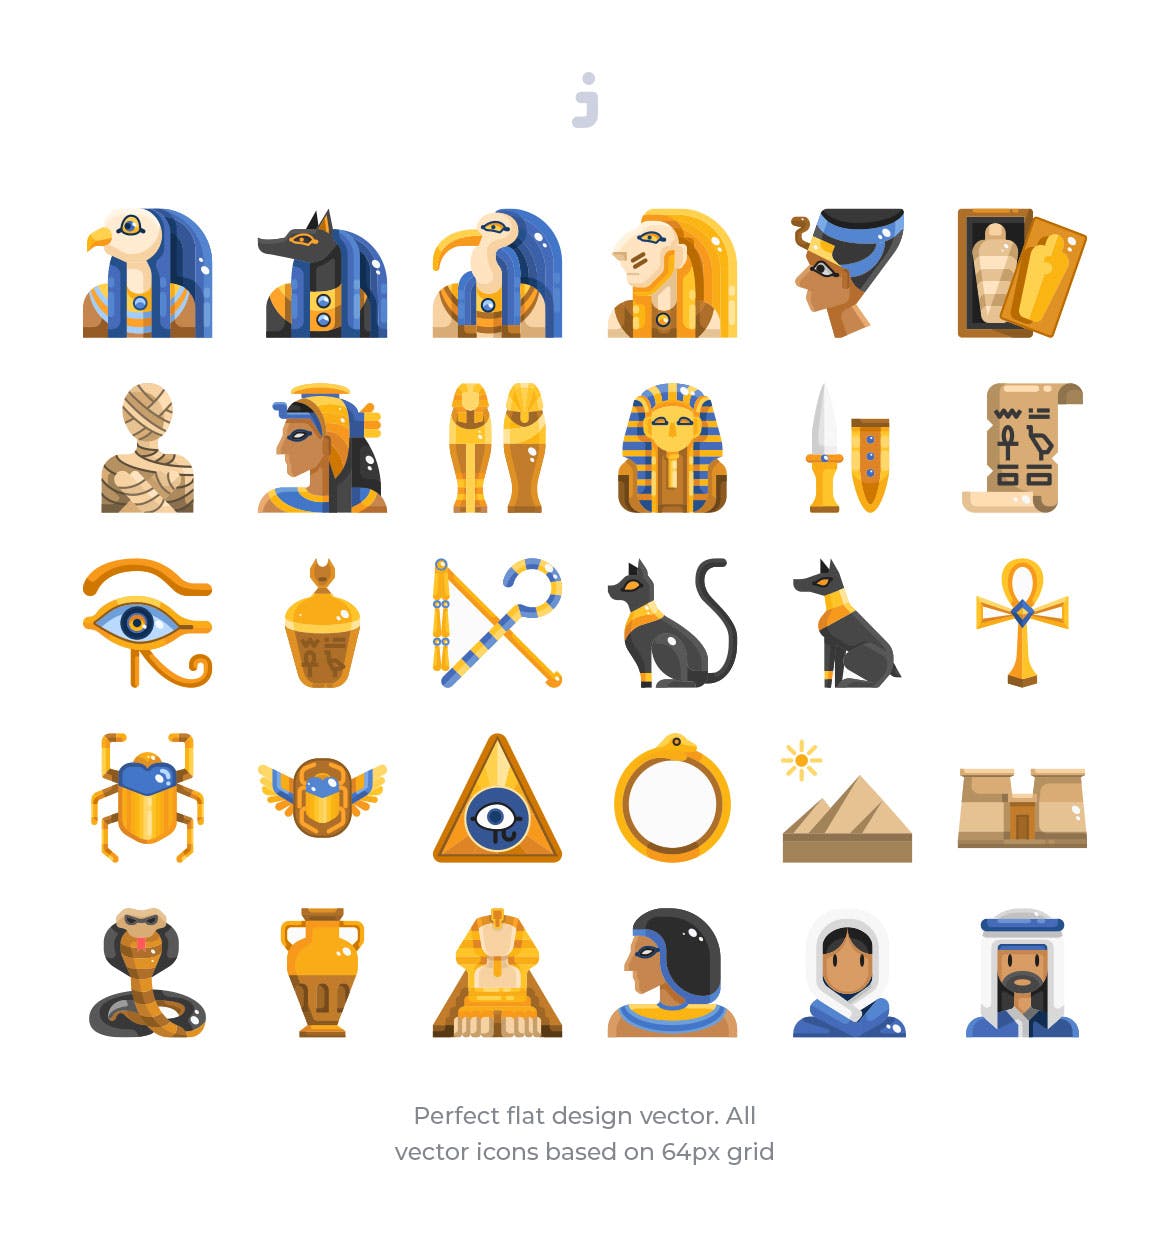 30枚埃及元素扁平设计风格矢量图标 30 Egypt Element Icons – Flat插图(1)